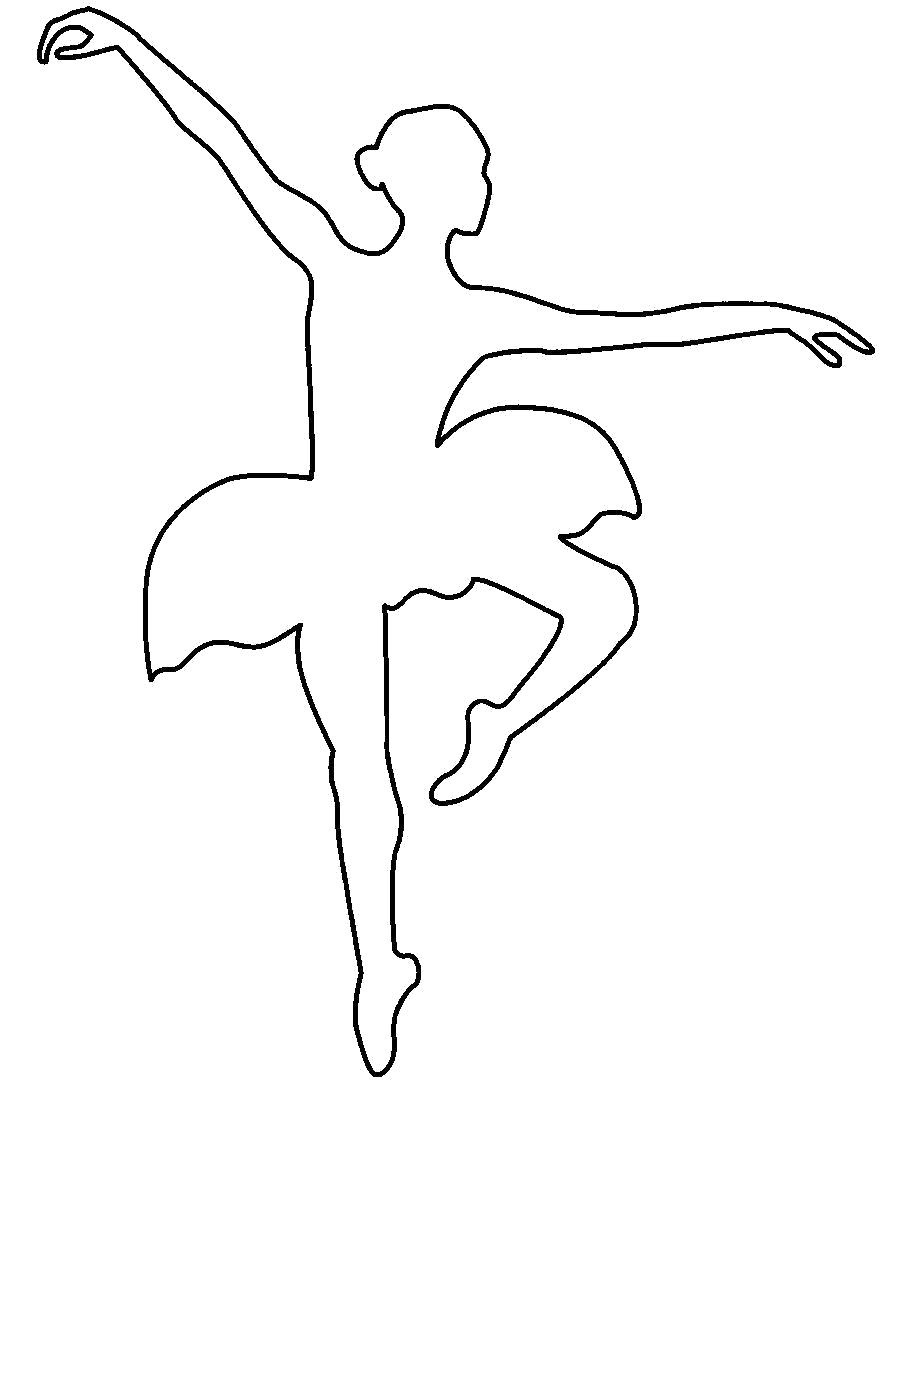 Раскраска  шаблоны балерин балерина в прыжке контур для вырезания из бумаги. Скачать Шаблон.  Распечатать Шаблон